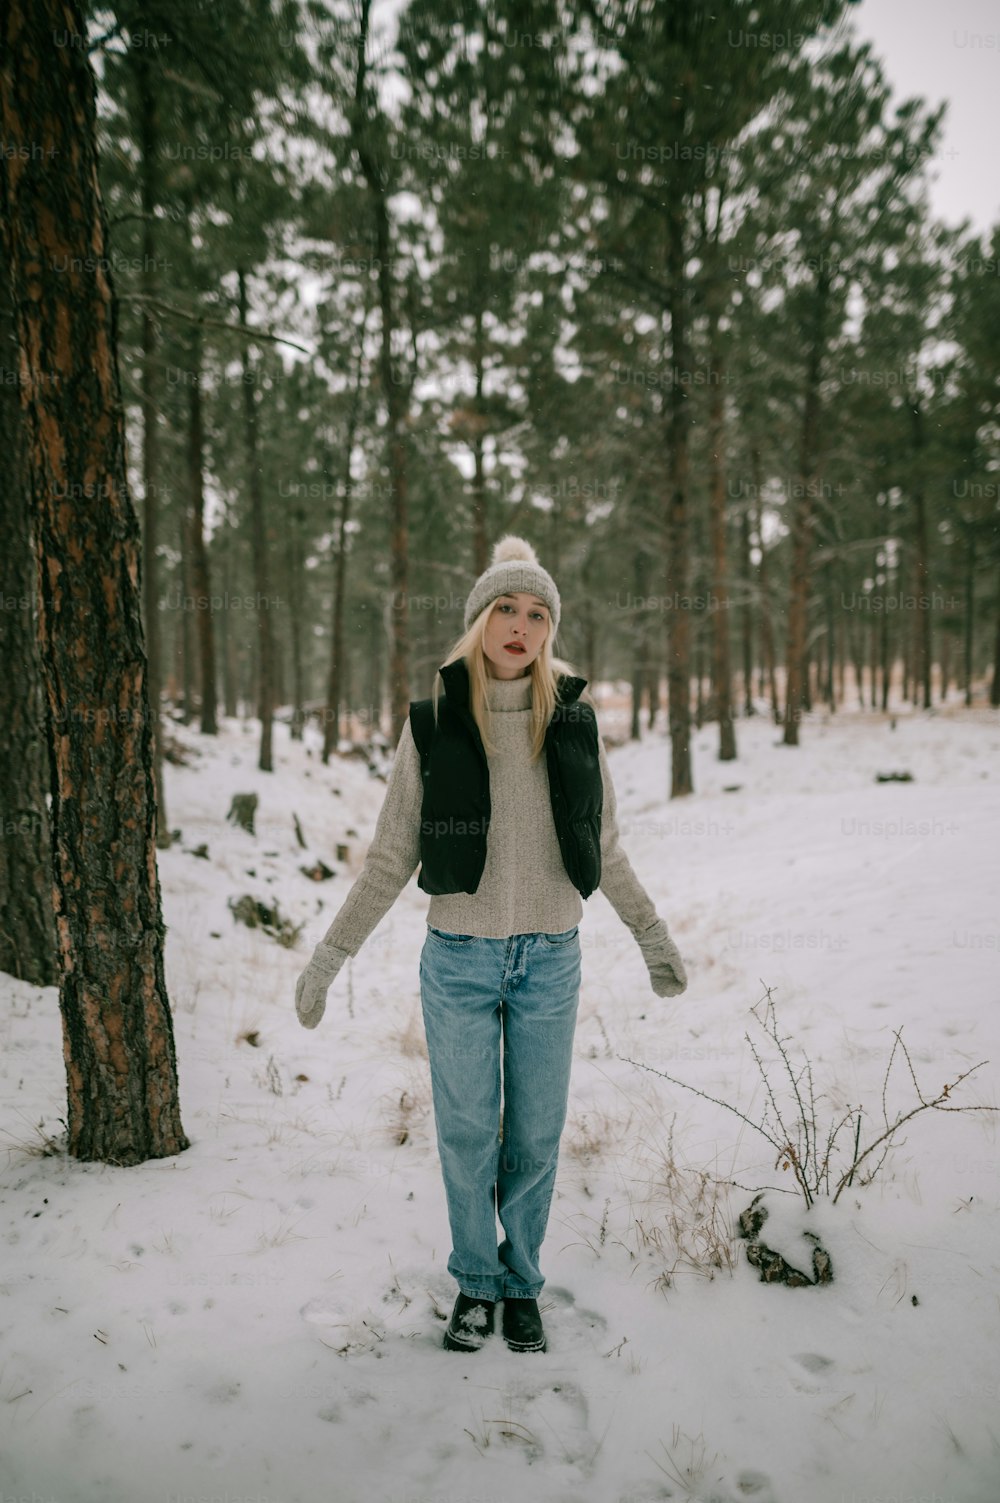 Una mujer parada en la nieve junto a un árbol